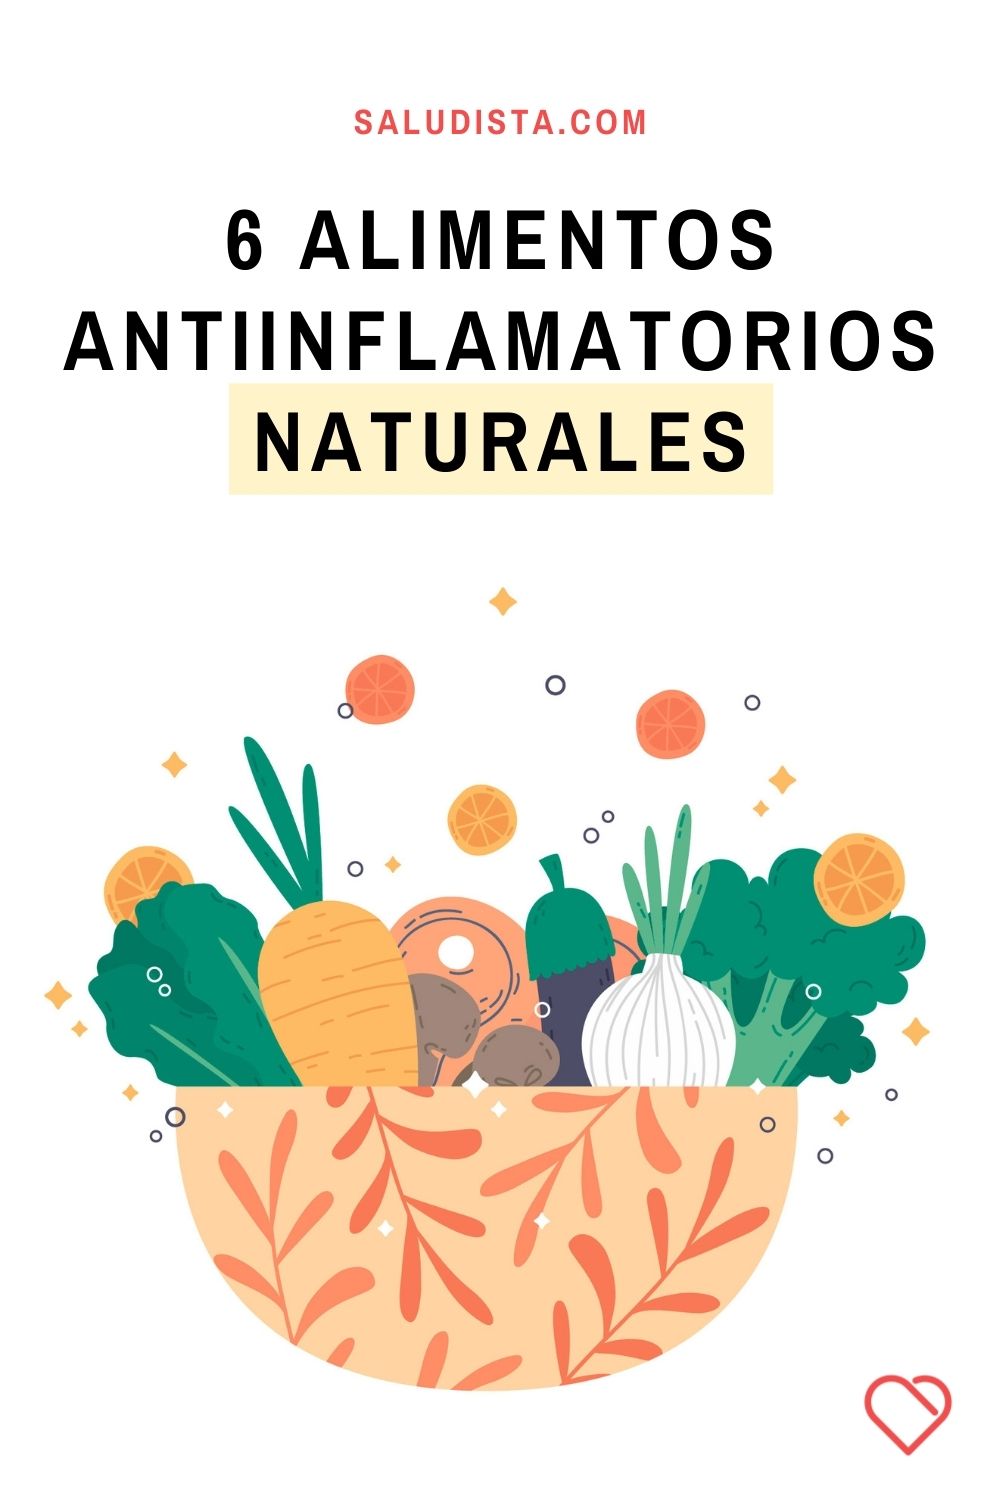 6 alimentos antiinflamatorios naturales